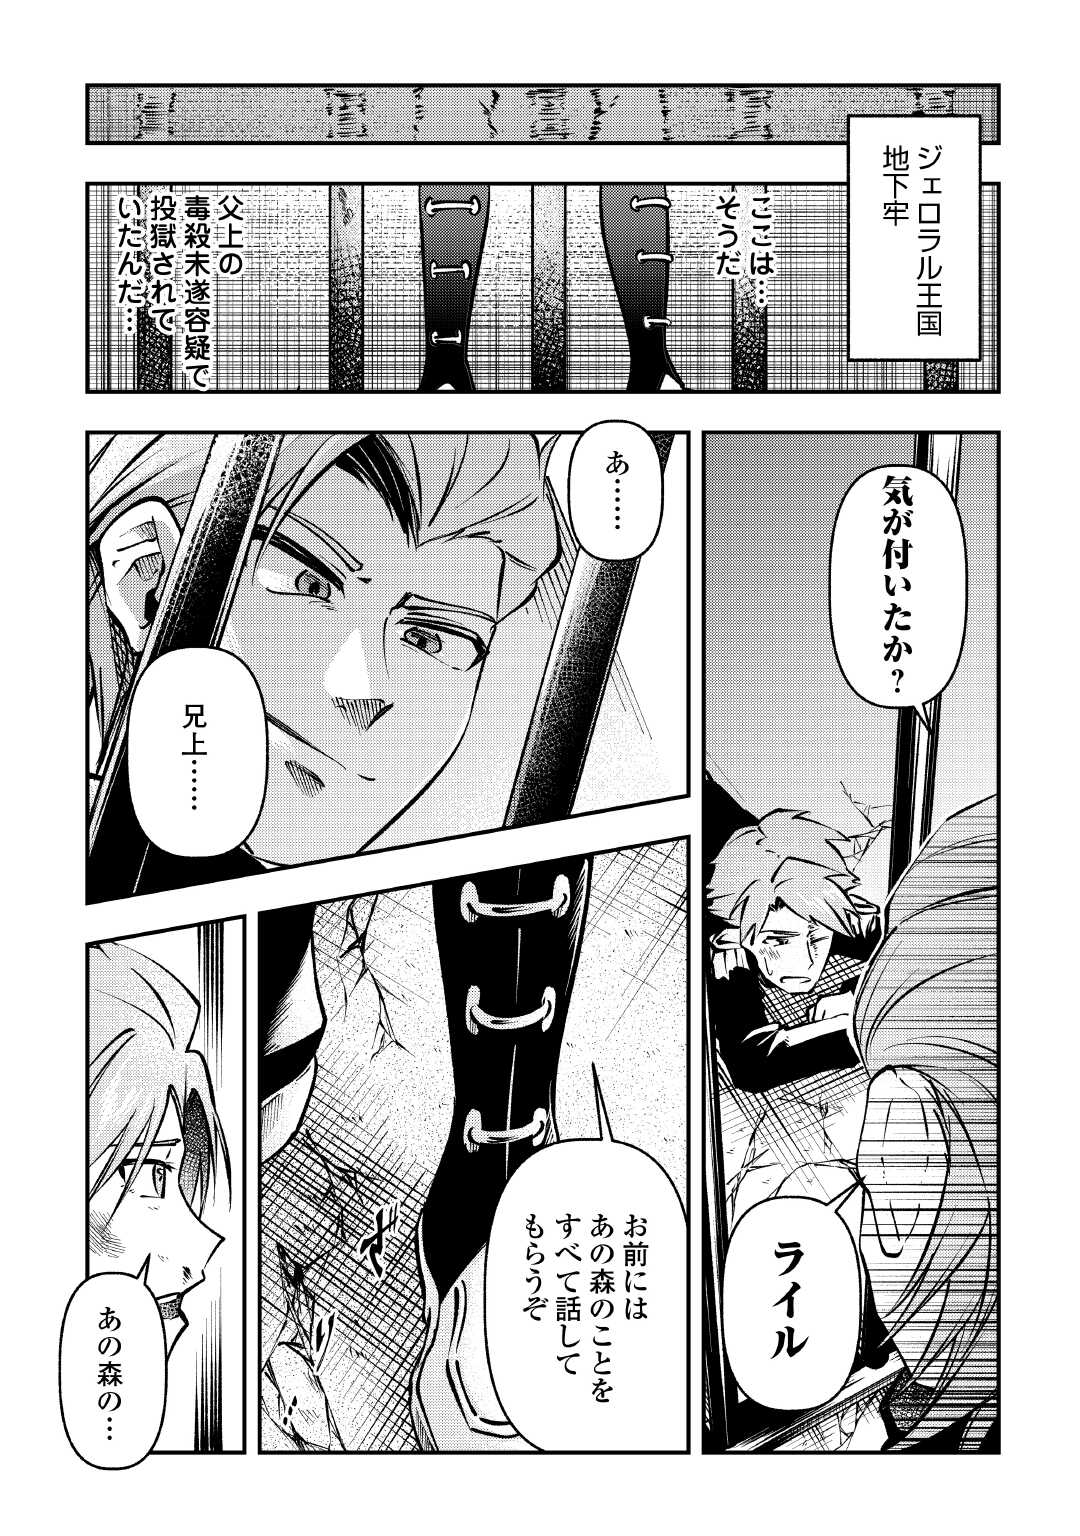 Osanago wa Saikyou no Tamer da to Kizuiteimasen! - Chapter 13 - Page 5